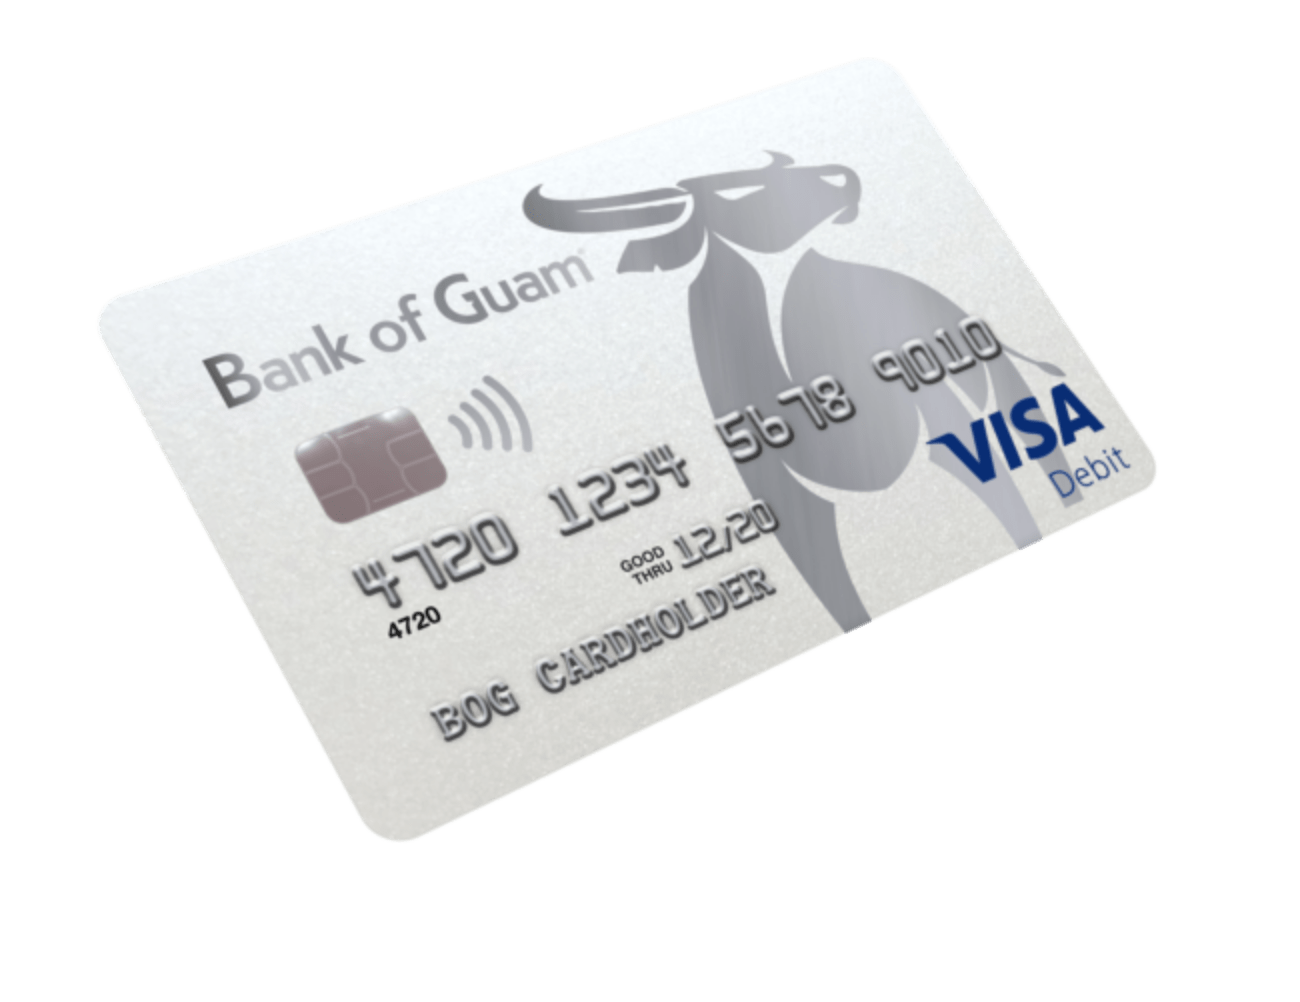 Bank of Guam Debit Card